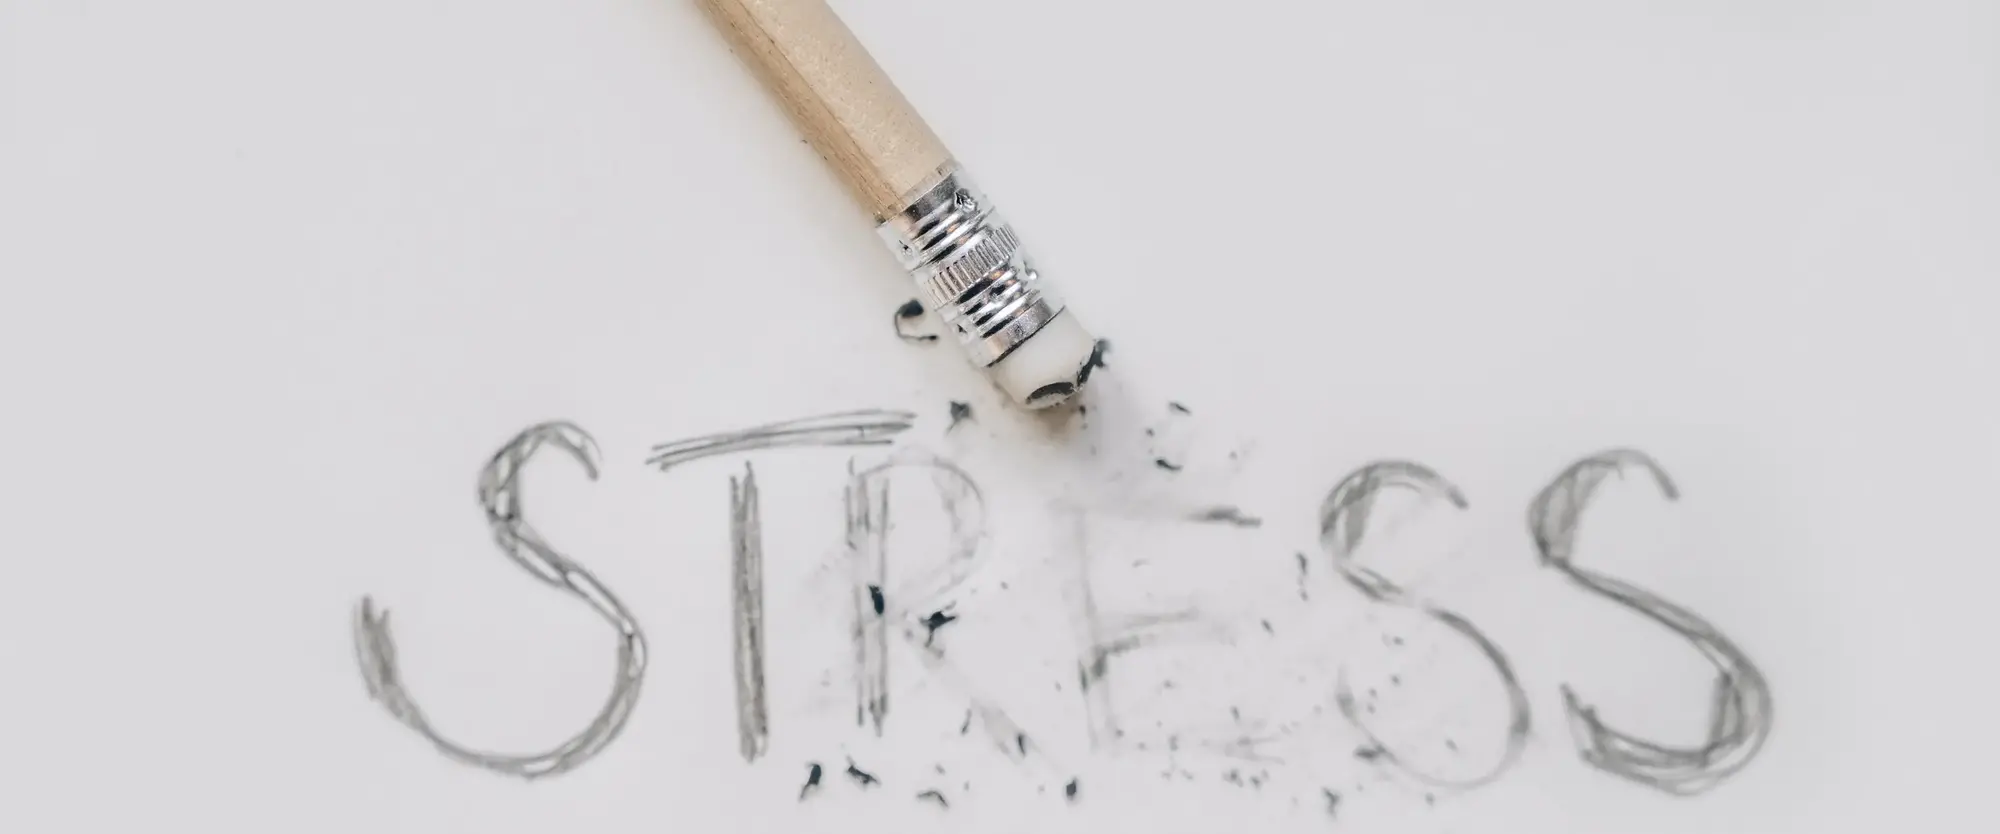 Das Wort Stress mit Bleistift auf ein weißes Blatt Papier geschrieben. Darauf liegt ein Bleistift mit einem Radiergummi am Ende, mit dem ein bischen von dem Wort wegradiert wurde.